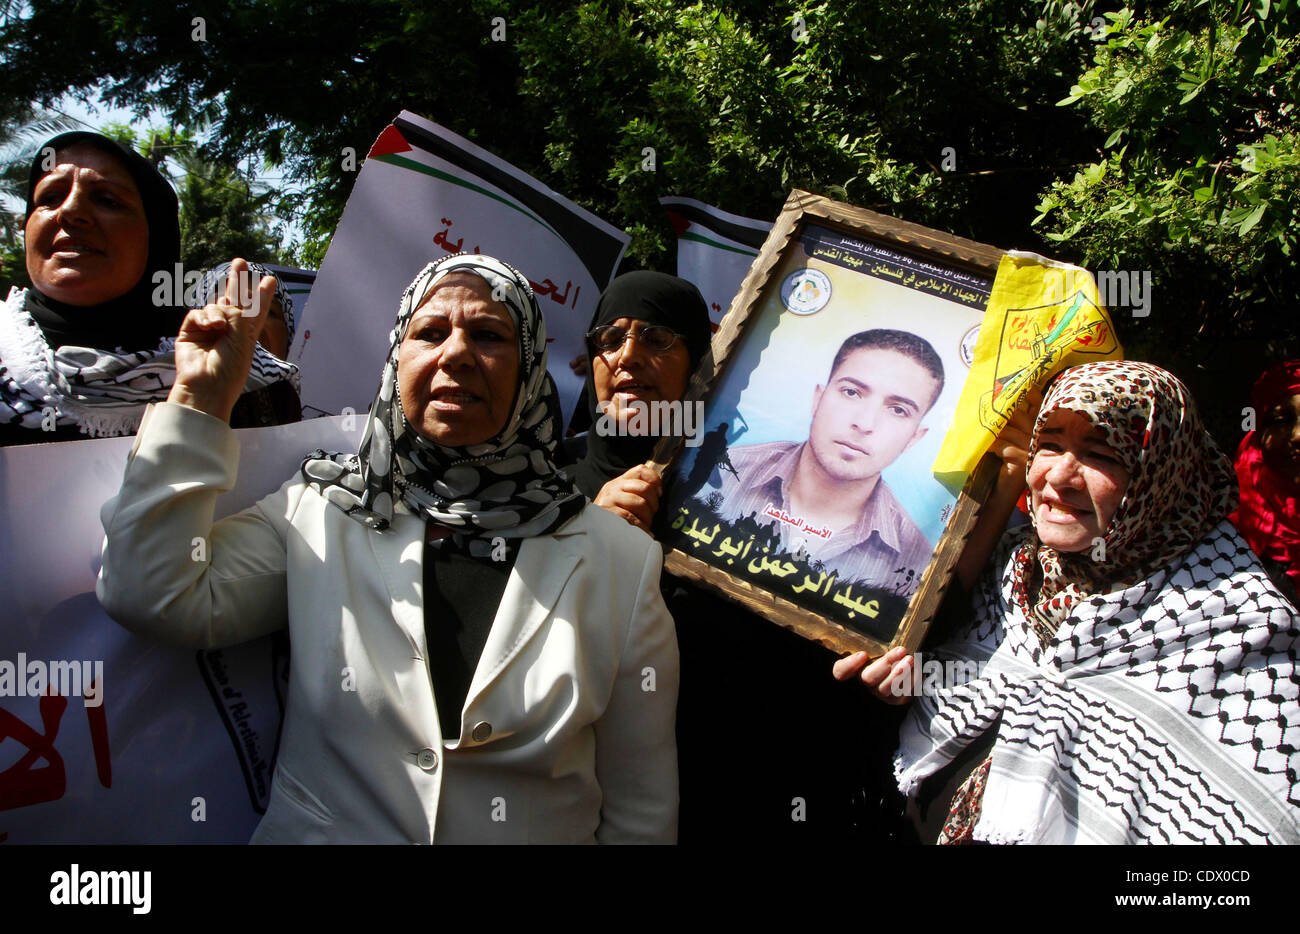 Palästinensische Frauen nehmen Teil an einer Protestkundgebung in Gaza-Stadt 6. Oktober 2011, zur Solidarität mit den palästinensischen Gefangenen in israelischen Gefängnissen gehalten. Hunderte von Palästinensern in israelischen Gefängnissen haben einen Hungerstreik zu protestieren gegen die Verschlechterung der Bedingungen in den Gefängnissen, der palästinensische Minister für Gefangene Affäre angeschlossen. Stockfoto